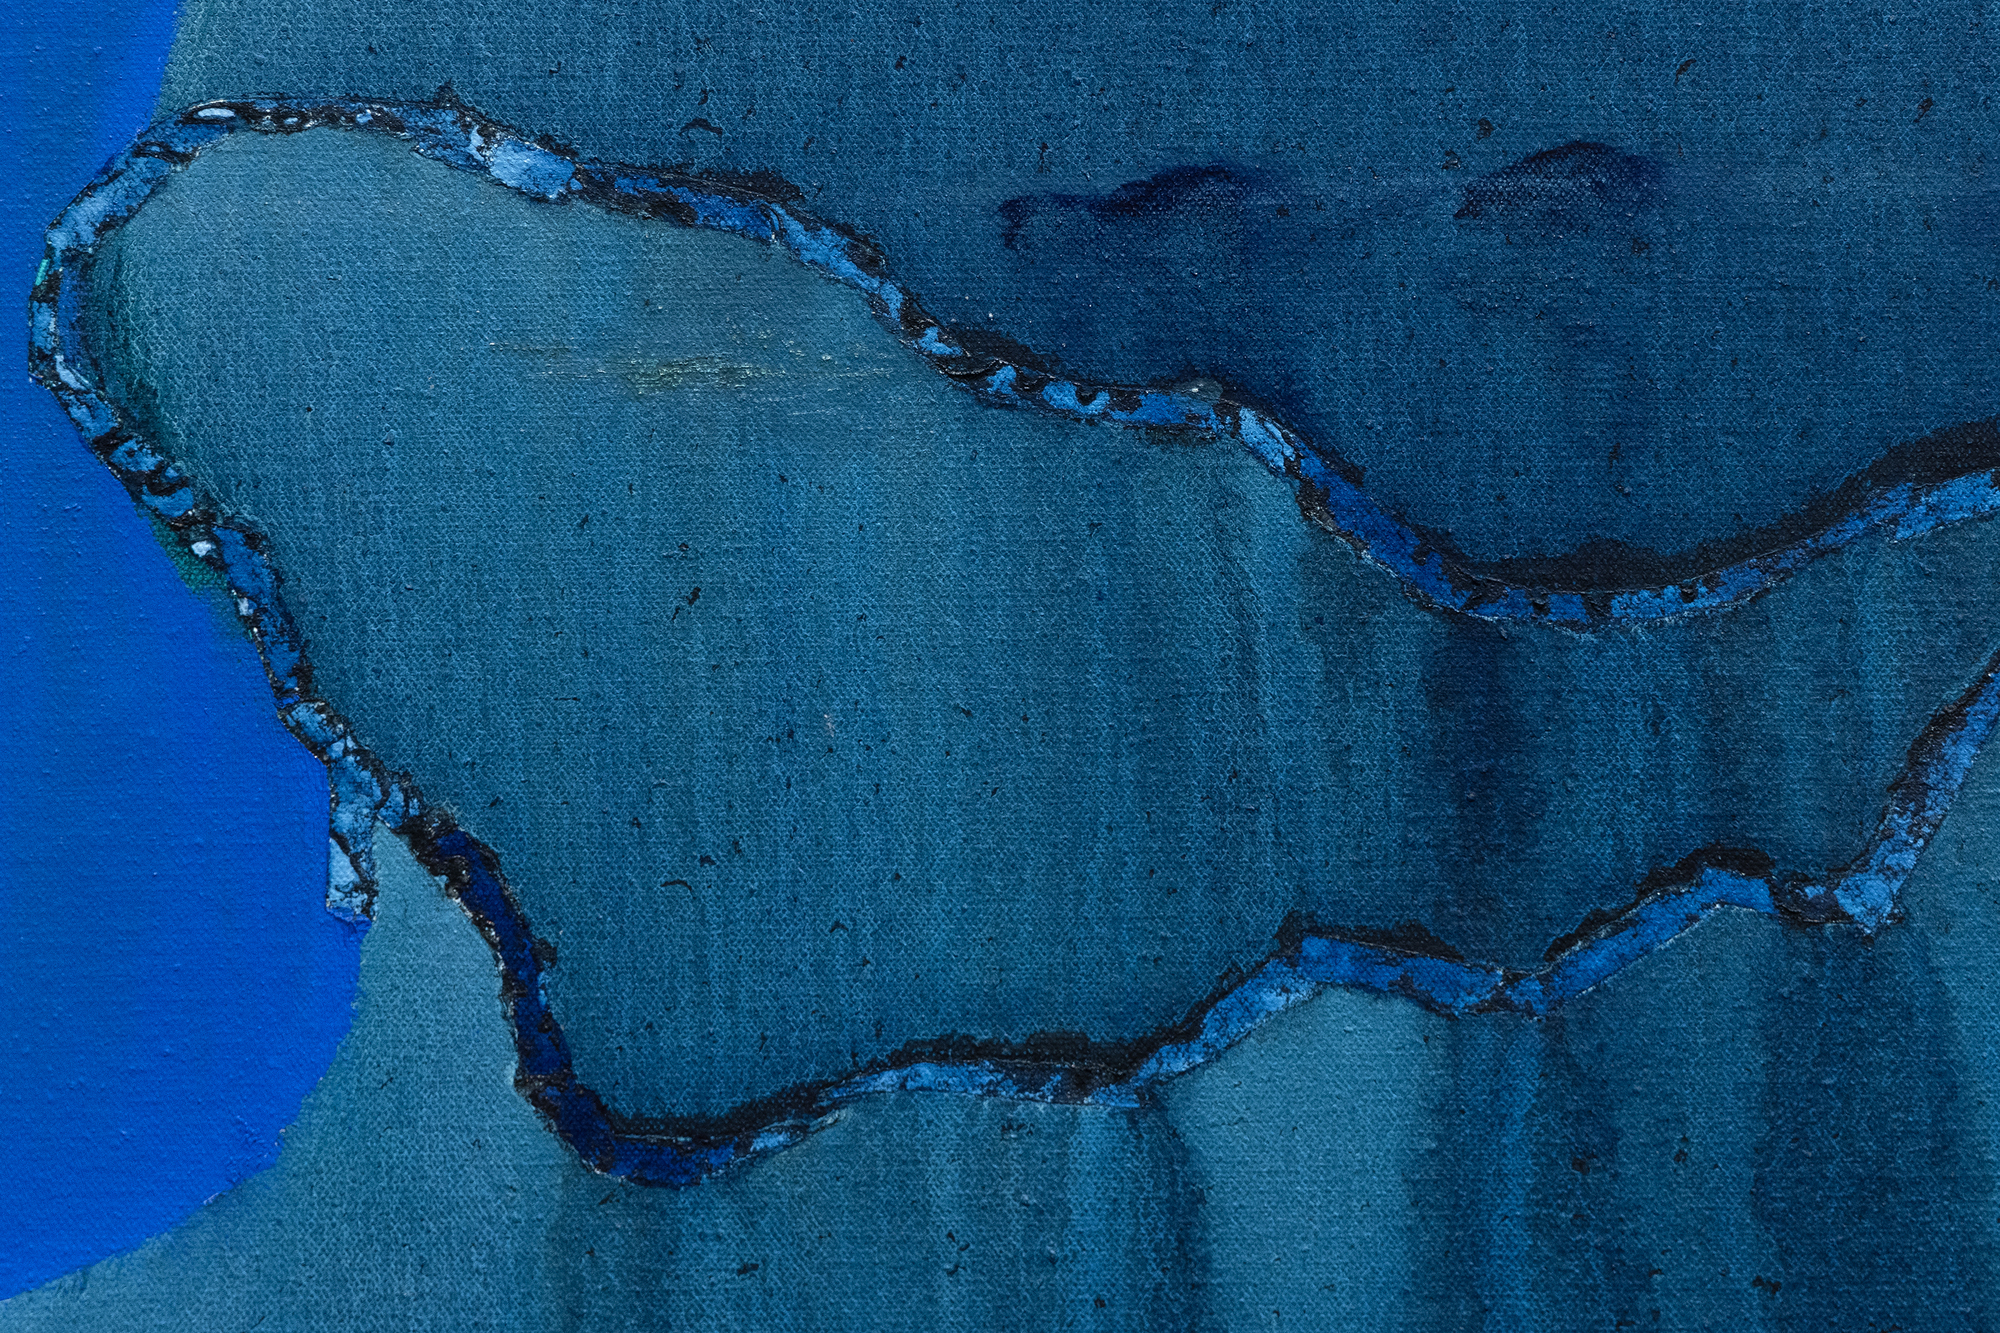 成熟の早い時期に、フッドは形而上学的なイメージのアーティストとしての地位を確立し、1962年にヒューストンに戻ったときにさまざまな宇宙論に従事しました。『Blue Waters』は、彼女の精神的な糧に対する絶え間ない探求を反映した作品の一つです。飽和した不透明な青の帯が、澄んだ青紺碧の球体へと伸び、地球の水球を連想させます。この大胆かつ調和のとれた侵入は、流体状態を魅惑的な燐光を放つフタログリーンに変えるエーテルの腕に似ており、その豪華さと流れるような輝きは、「神の手」の比喩を呼び起こす神の介入を示唆し、生命の本質を生き生きとさせます。フッドの色と形の巧みな使用は、しばしば自然界における宇宙的または精神的な抱擁の解釈を誘います。しかし、彼女の澄んだ色彩は、ランダム性や不確実性ではなく、ブルーウォーターズに畏敬の念を抱かせる彼女の驚くべき熟練とコントロールを示しています。